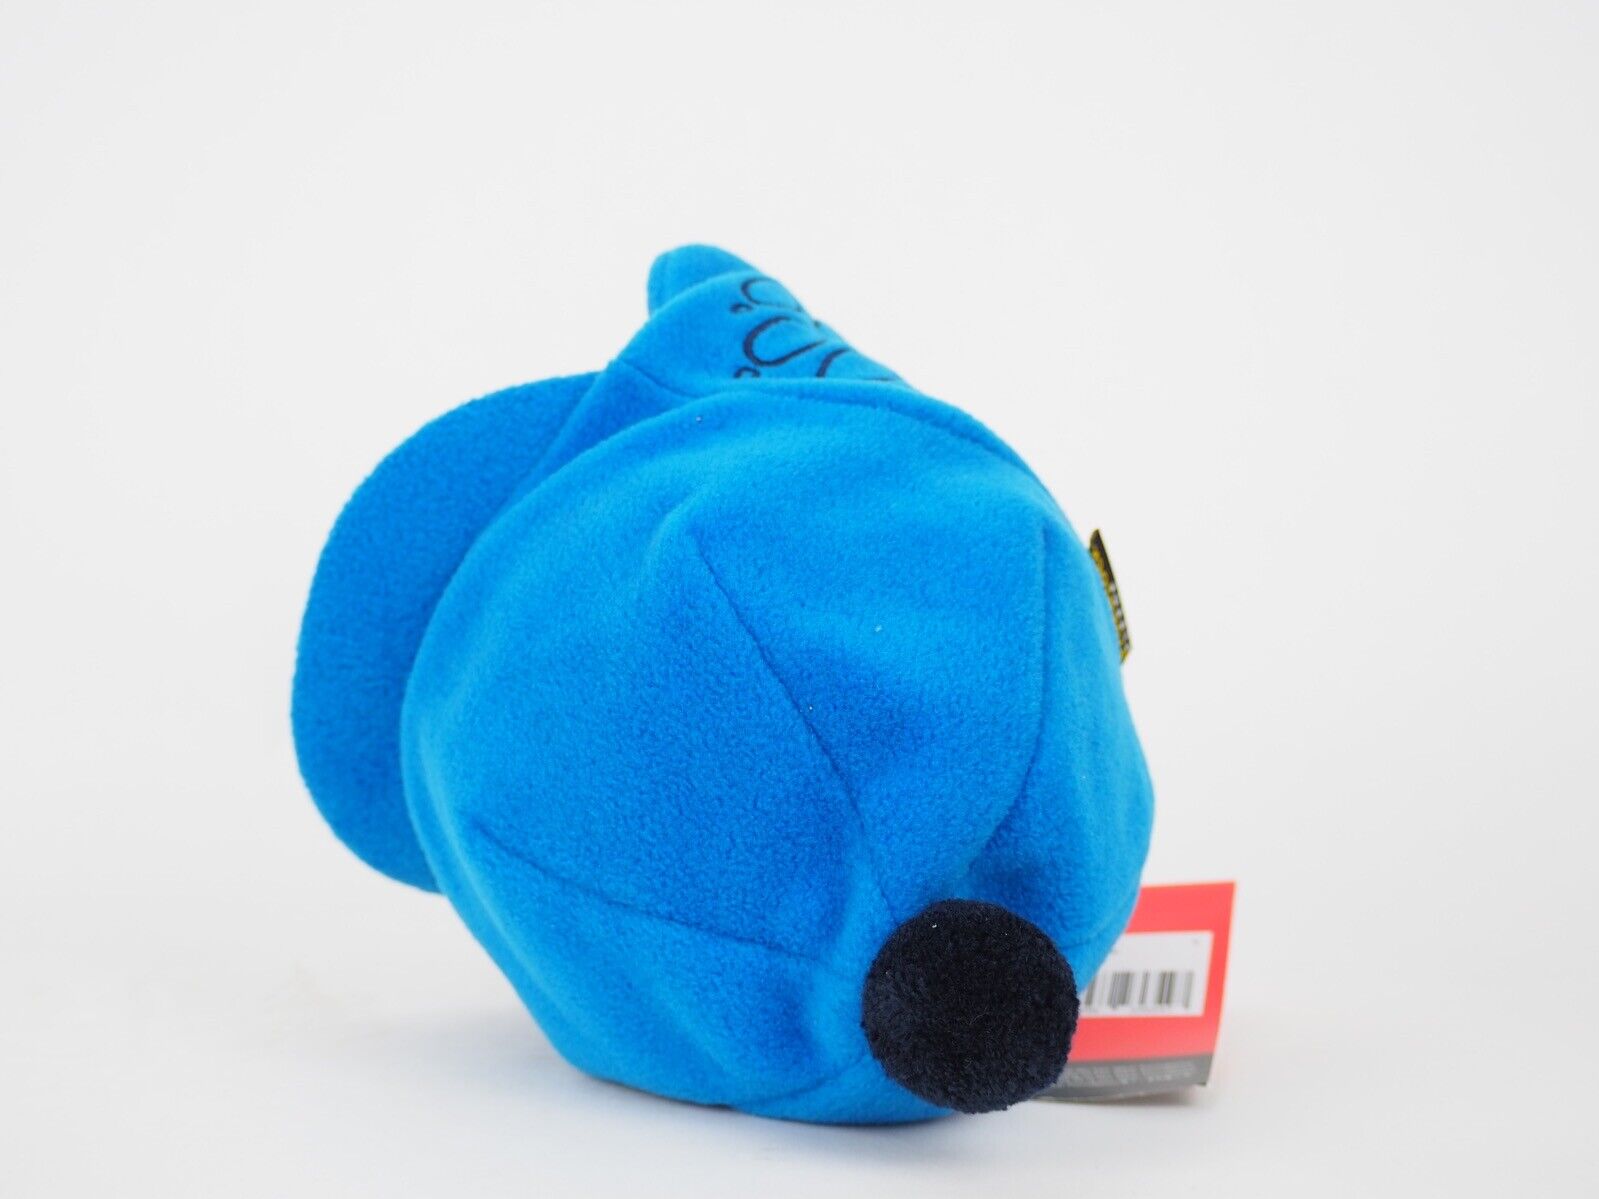 Kids Jack Wolfskin Stormlock 1902301 Electric Blue Warm Winter Hat Ear Cap - London Top Style